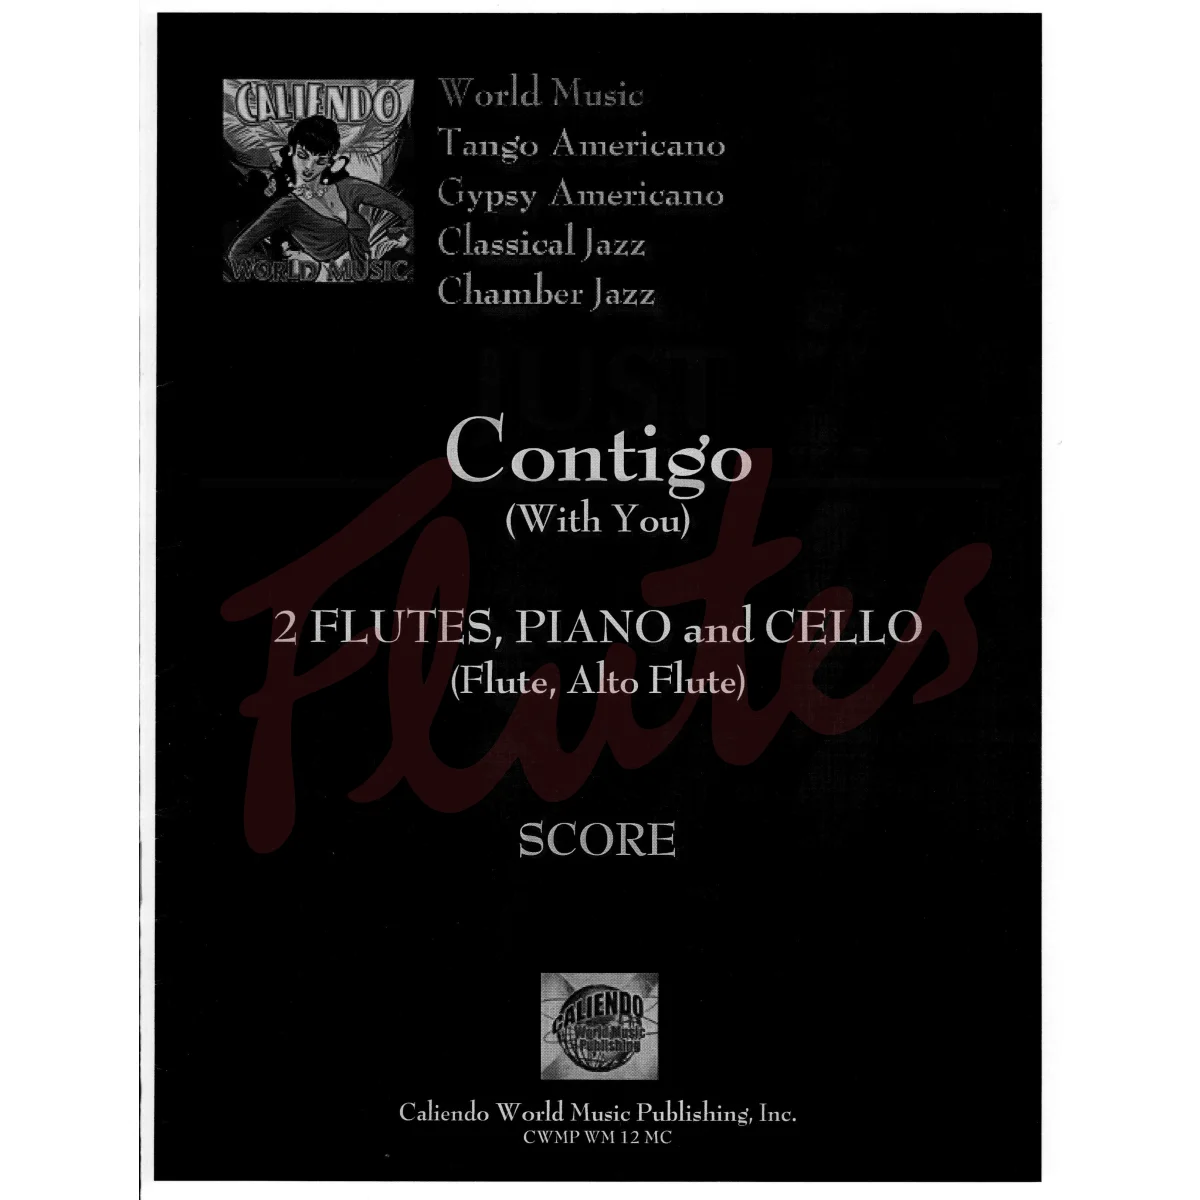 Contigo (With You) for Flute, Alto Flute, Cello and Piano